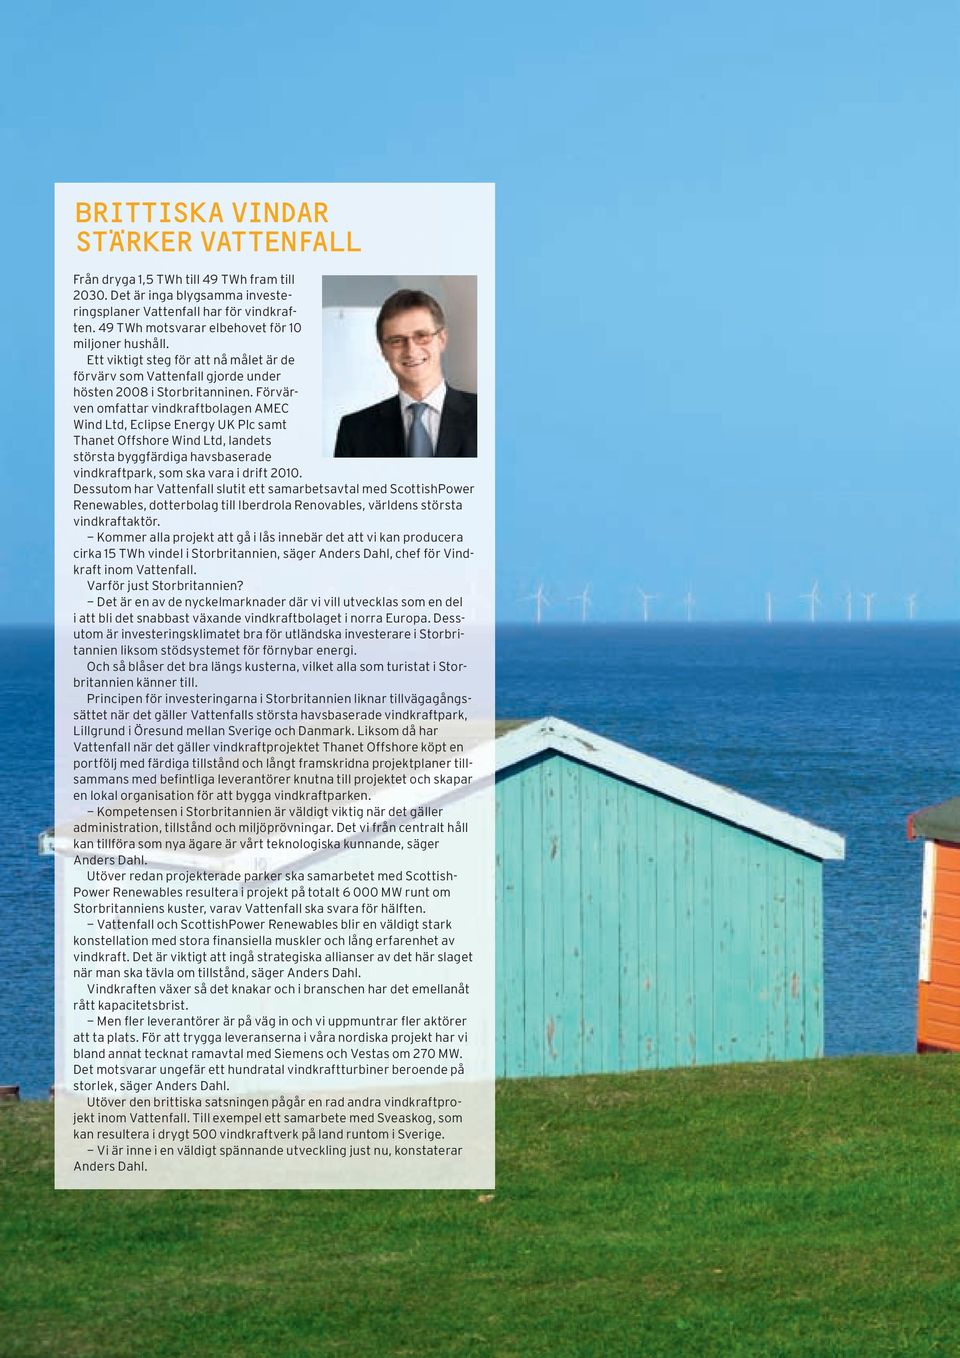 Förvärven omfattar vindkraftbolagen AMEC Wind Ltd, Eclipse Energy UK Plc samt Thanet Offshore Wind Ltd, landets största byggfärdiga havsbaserade vindkraftpark, som ska vara i drift 2010.